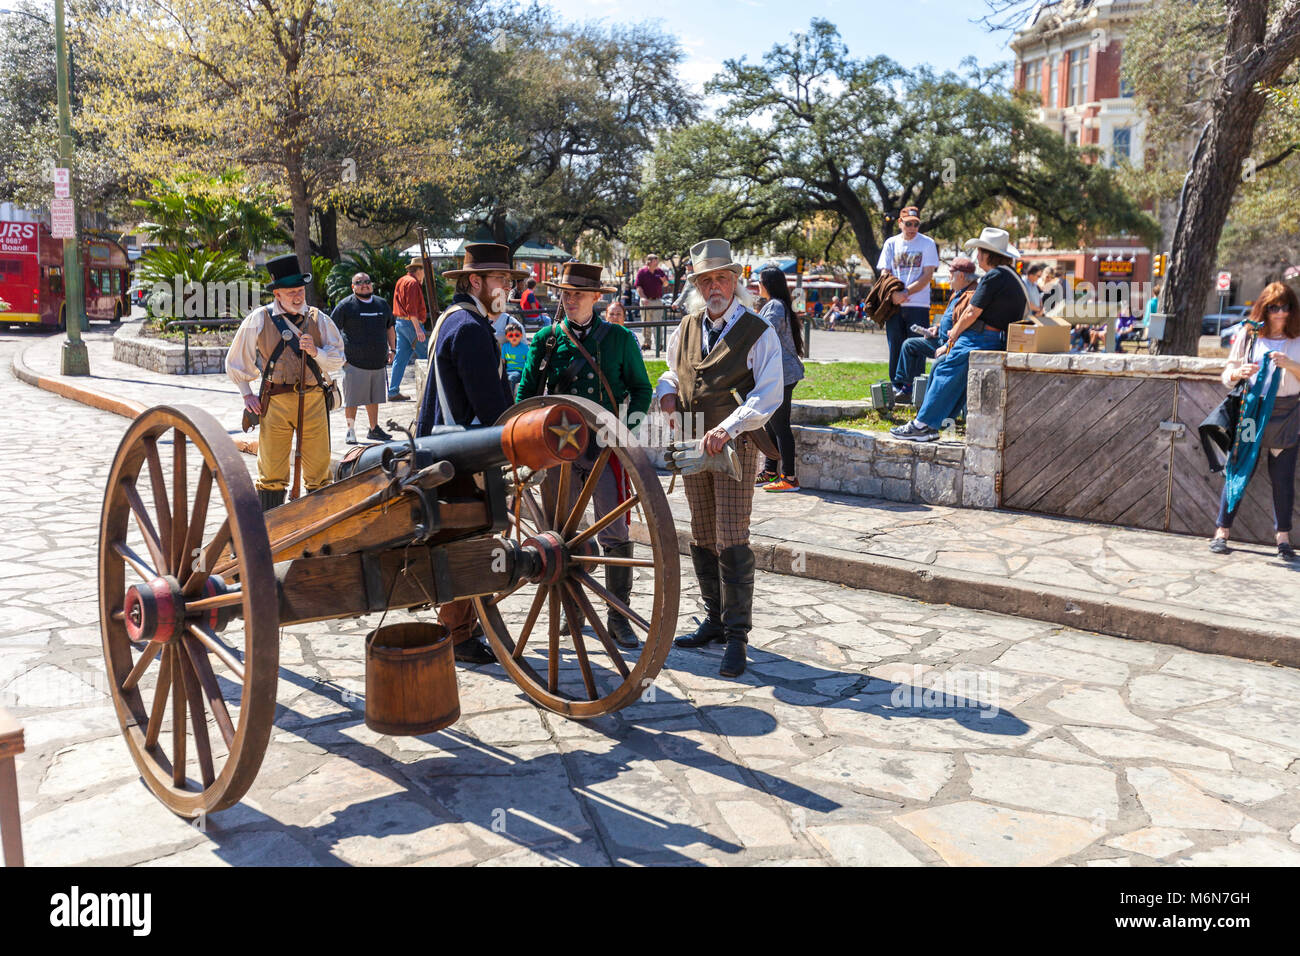 SAN ANTONIO, Texas - März 2, 2018 - Männer verkleidet als Soldaten aus dem 19. Jahrhundert in der Nachstellung der Schlacht von Alamo, die teilnehmen Stockfoto